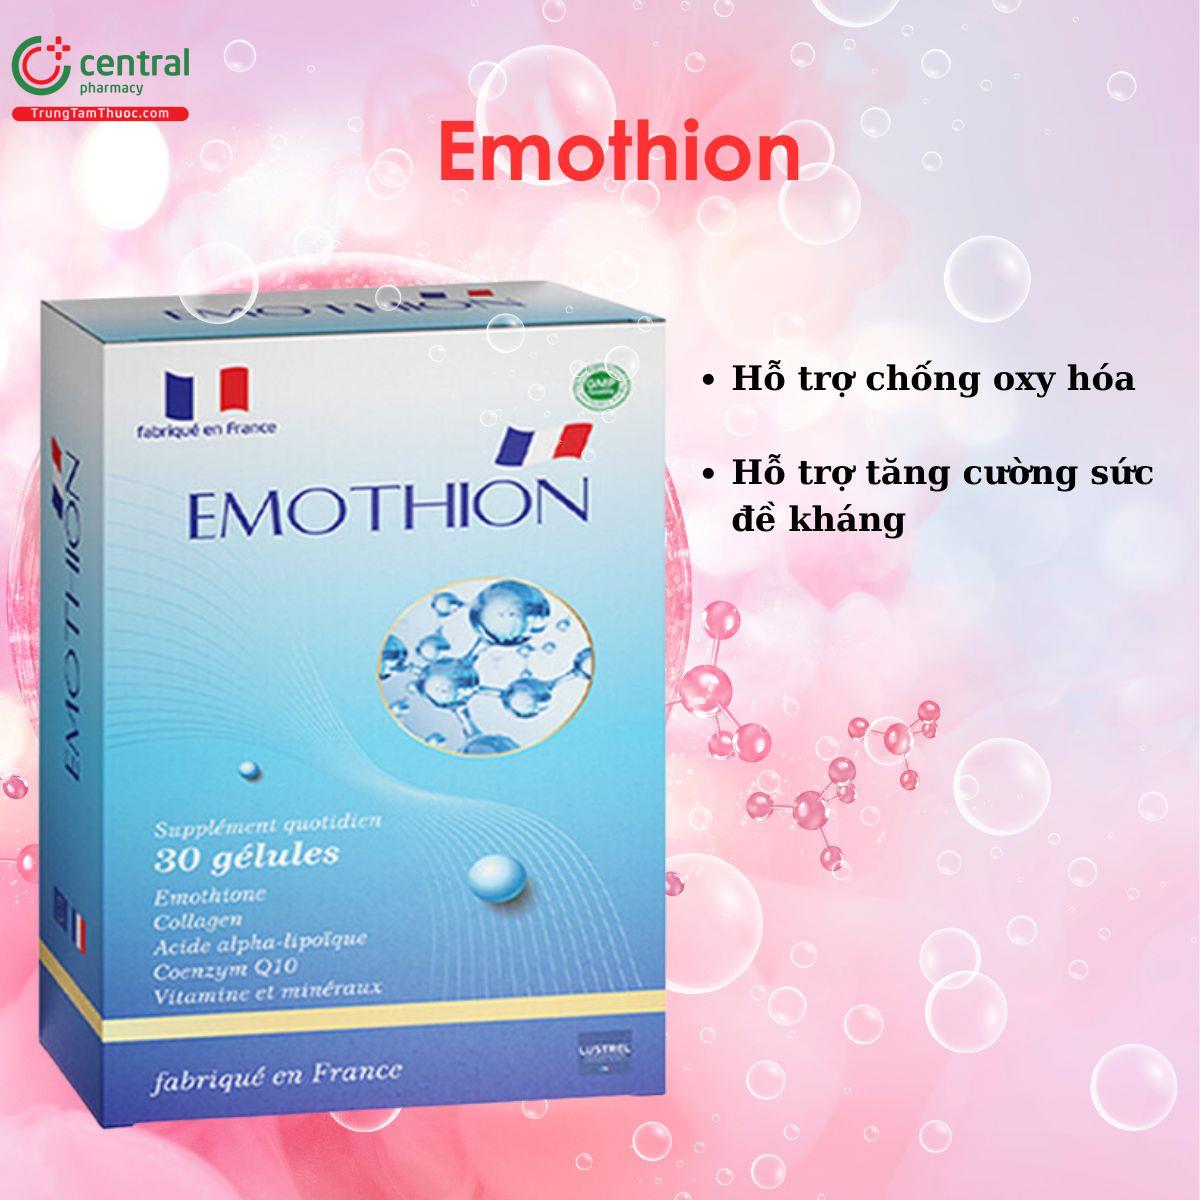 Emothion - Hỗ trợ chống oxy hóa, làm đẹp da, tăng cường miễn dịch